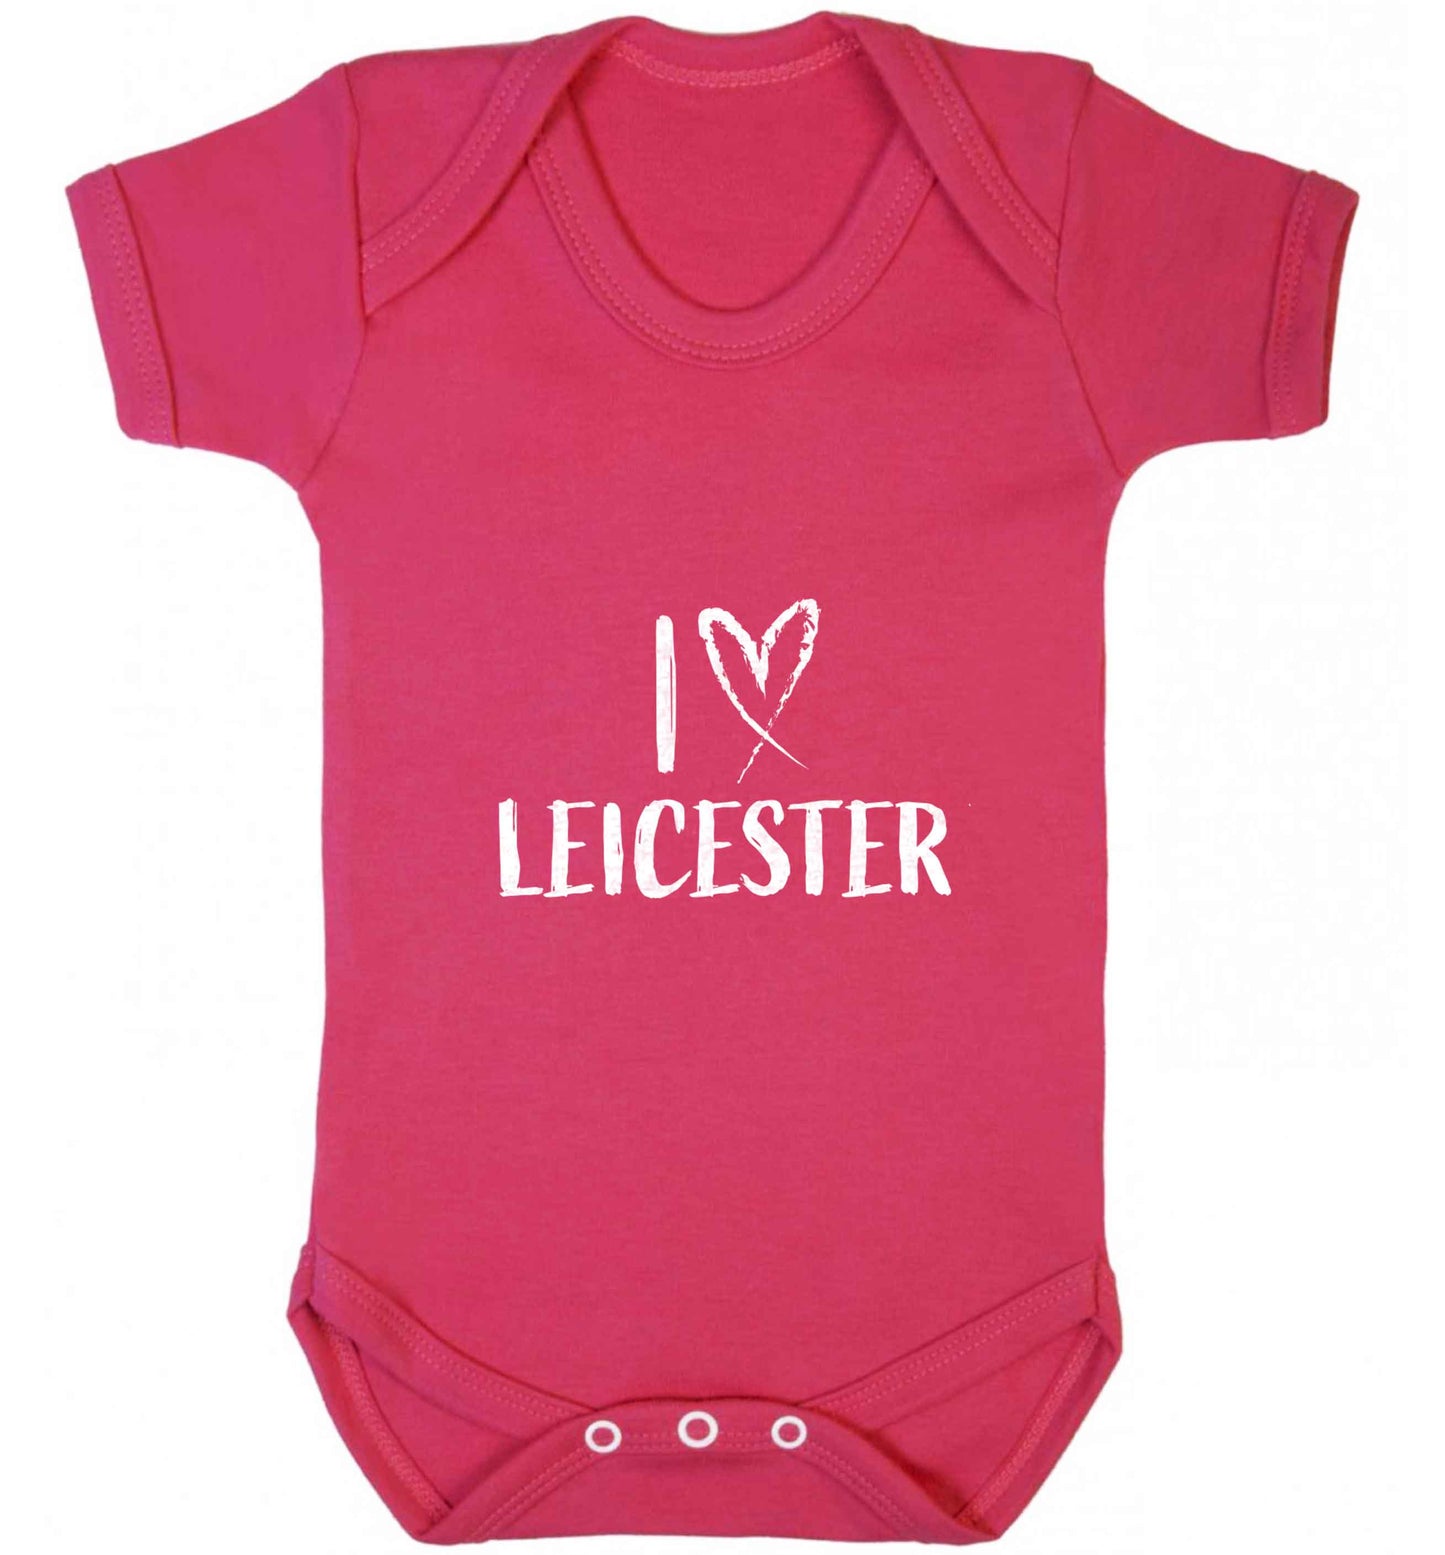 I love Leicester baby vest dark pink 18-24 months